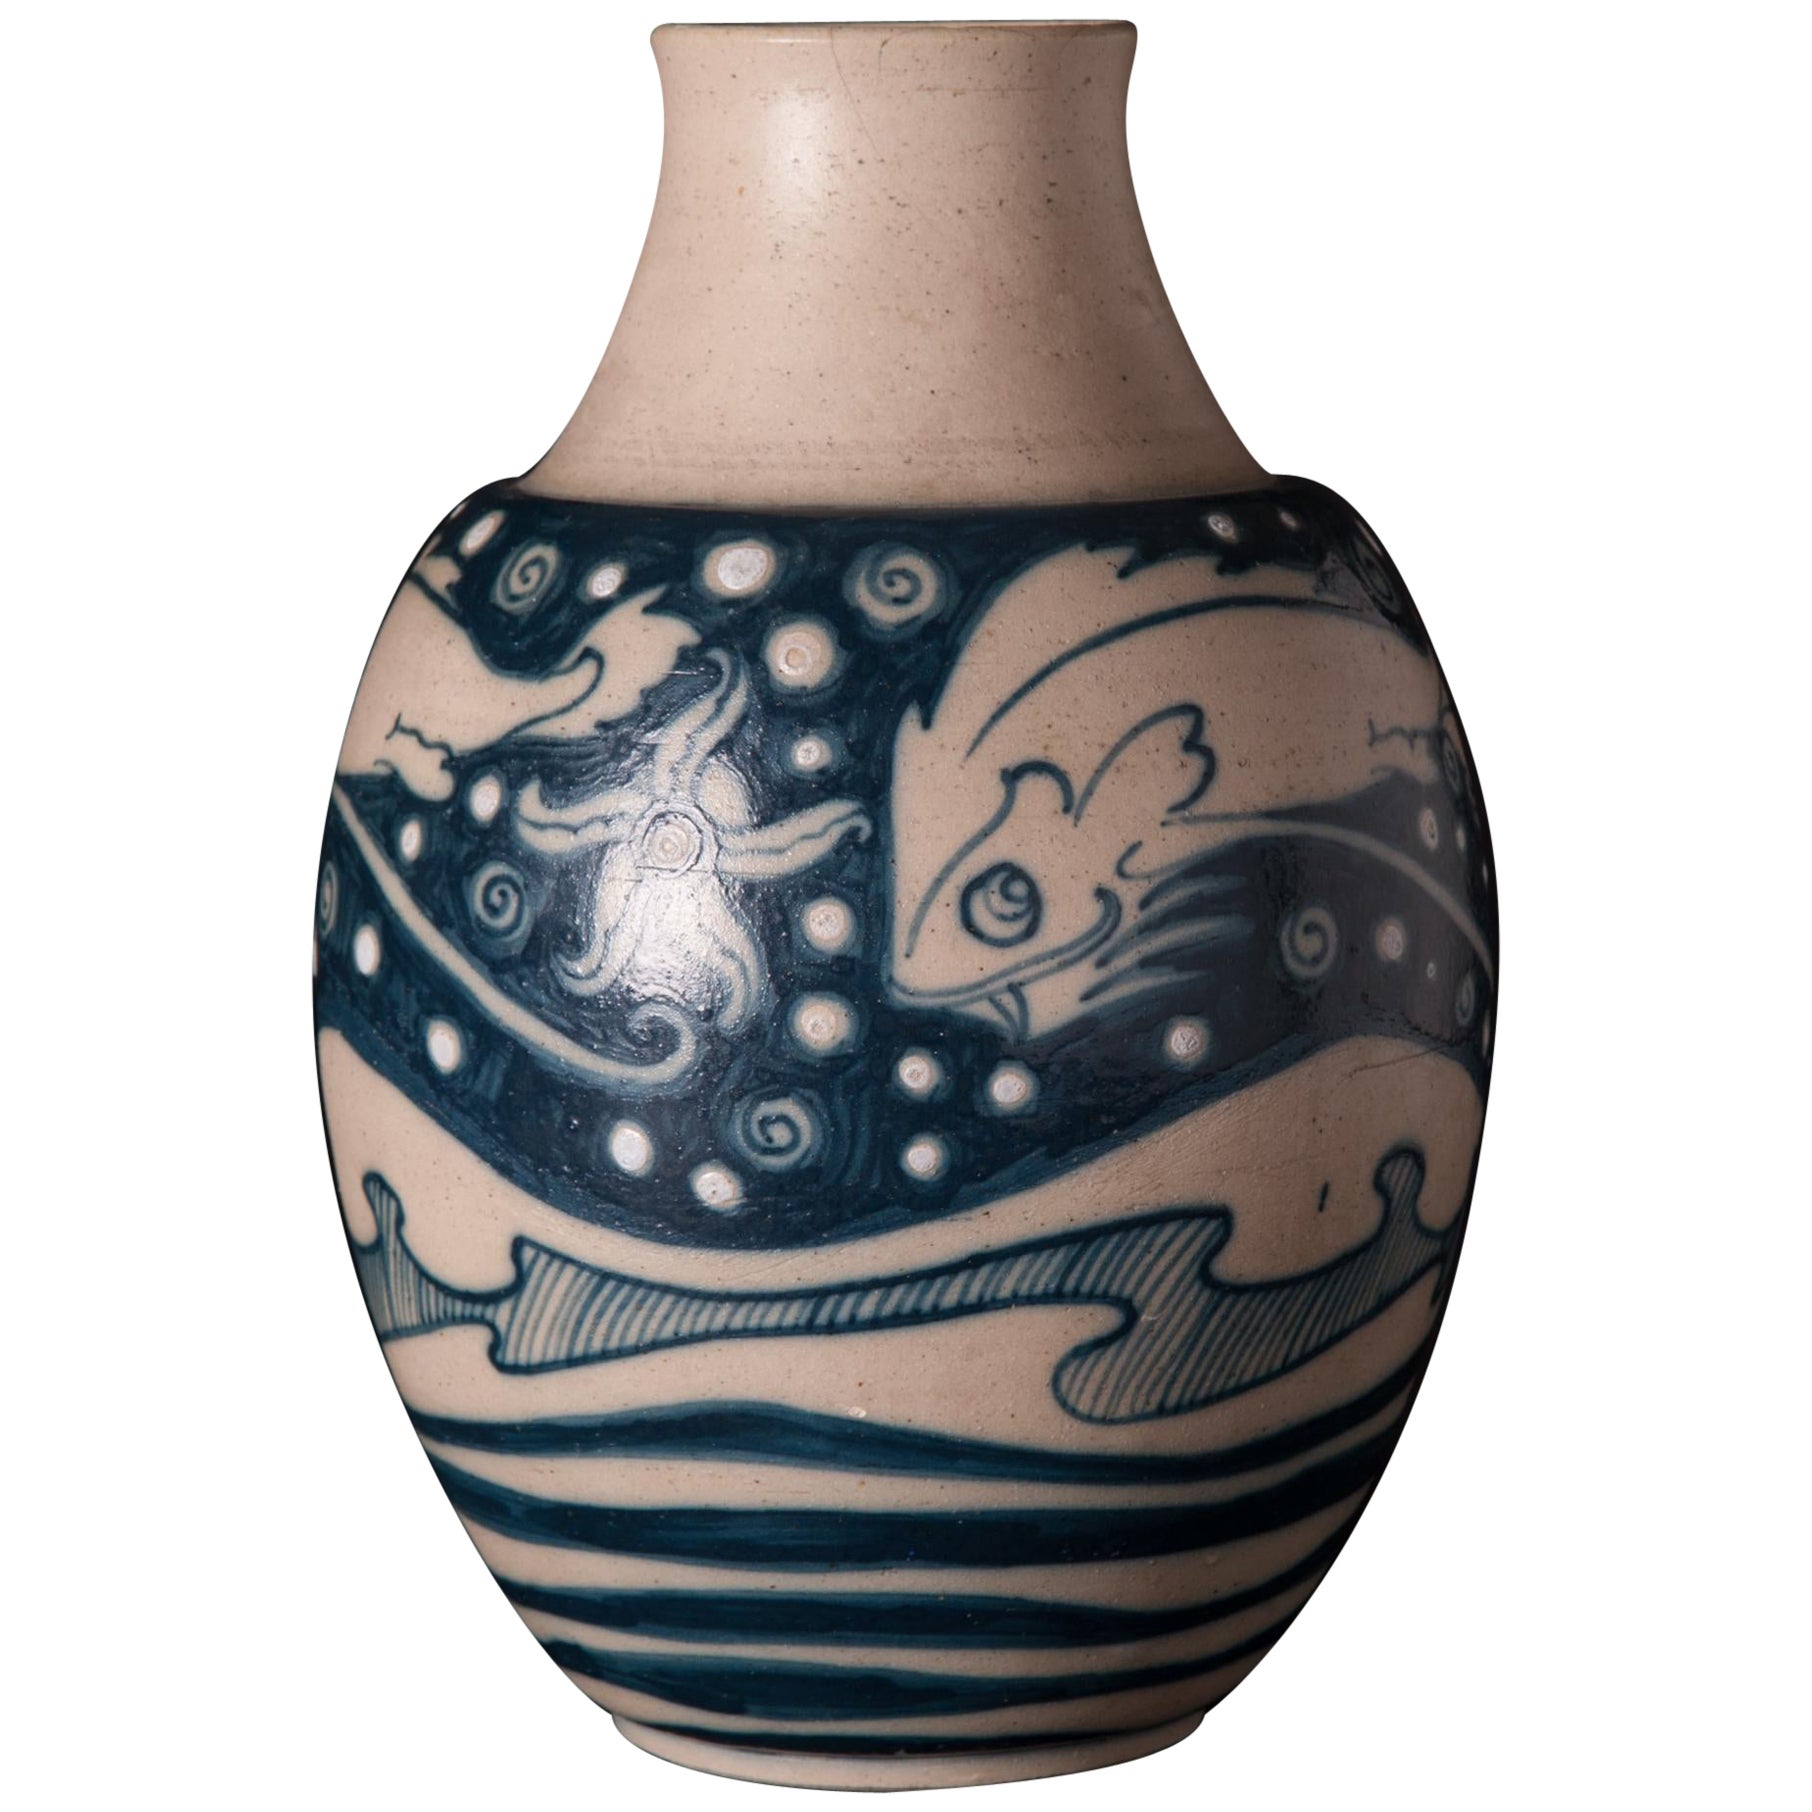 Jugendstil-Vase mit kosmischem Katzenfischmotiv von Galileo Chini